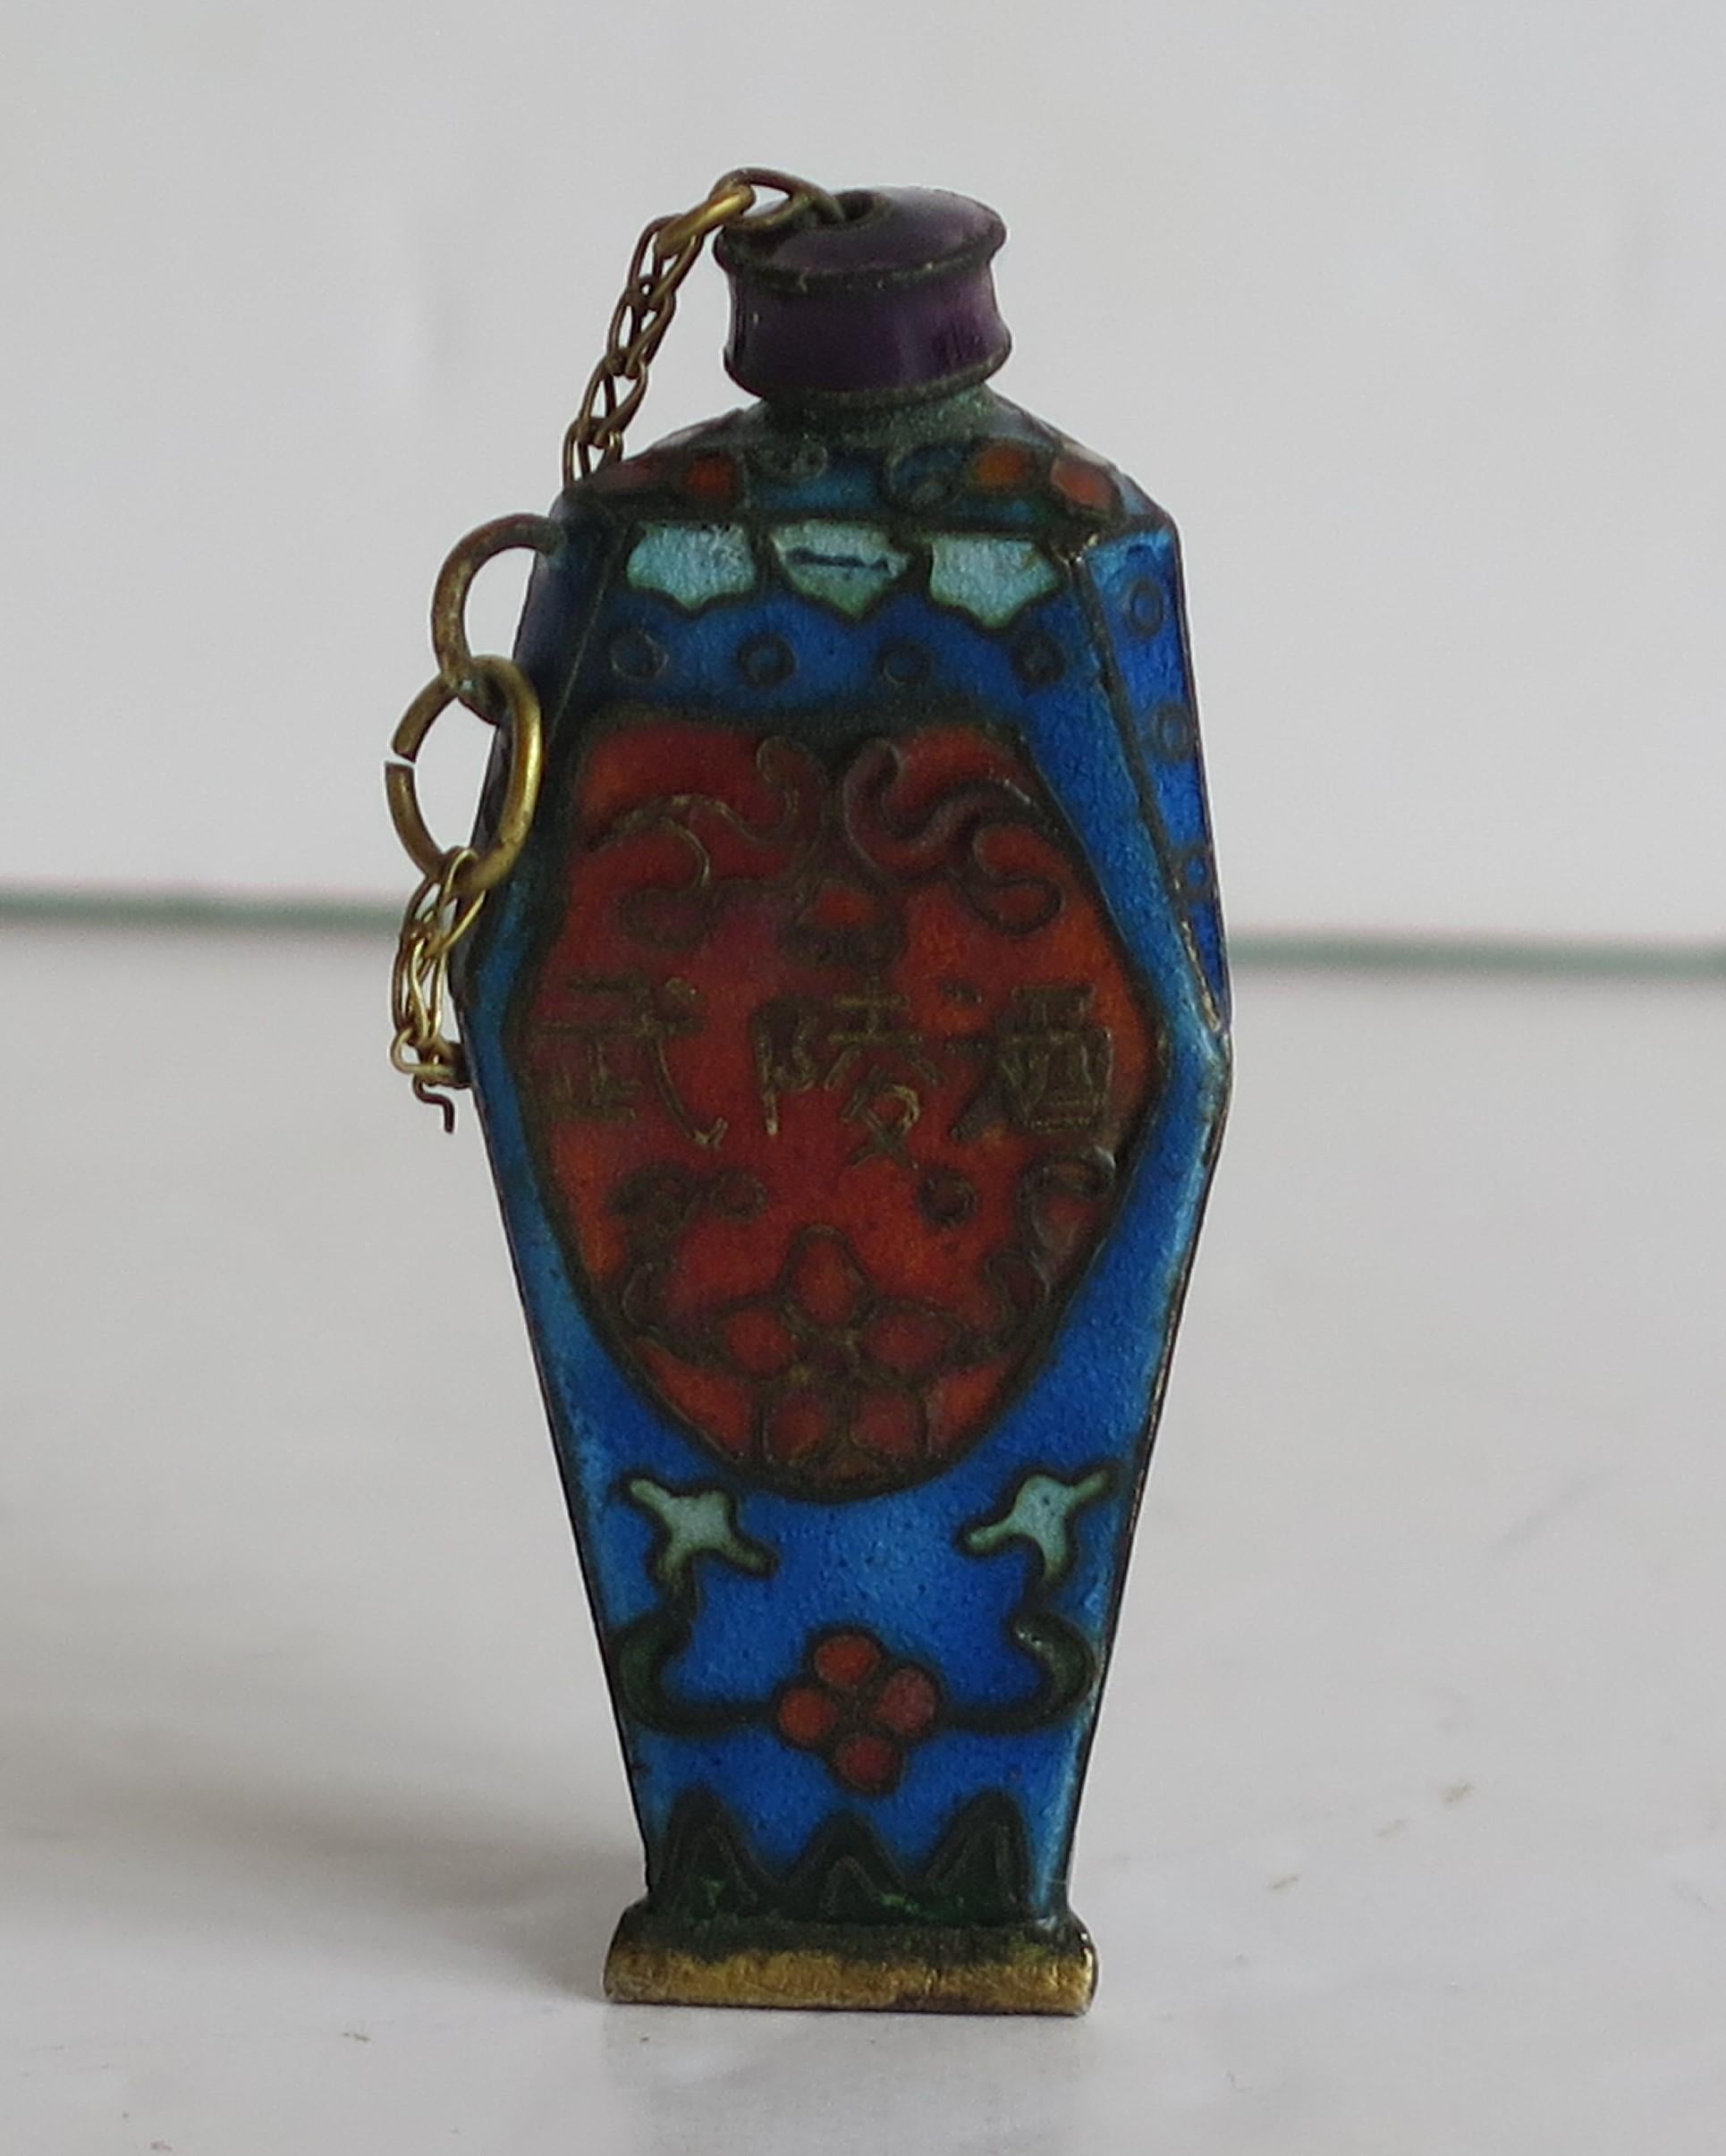 Dies ist ein sehr gutes Beispiel für eine kleine, seltene, dreieckige chinesische Schnupftabakflasche aus Cloisonné mit handemaillierter Dekoration, die verschiedene florale Motive darstellt, und mit dem originalen Kettenverschluss aus der